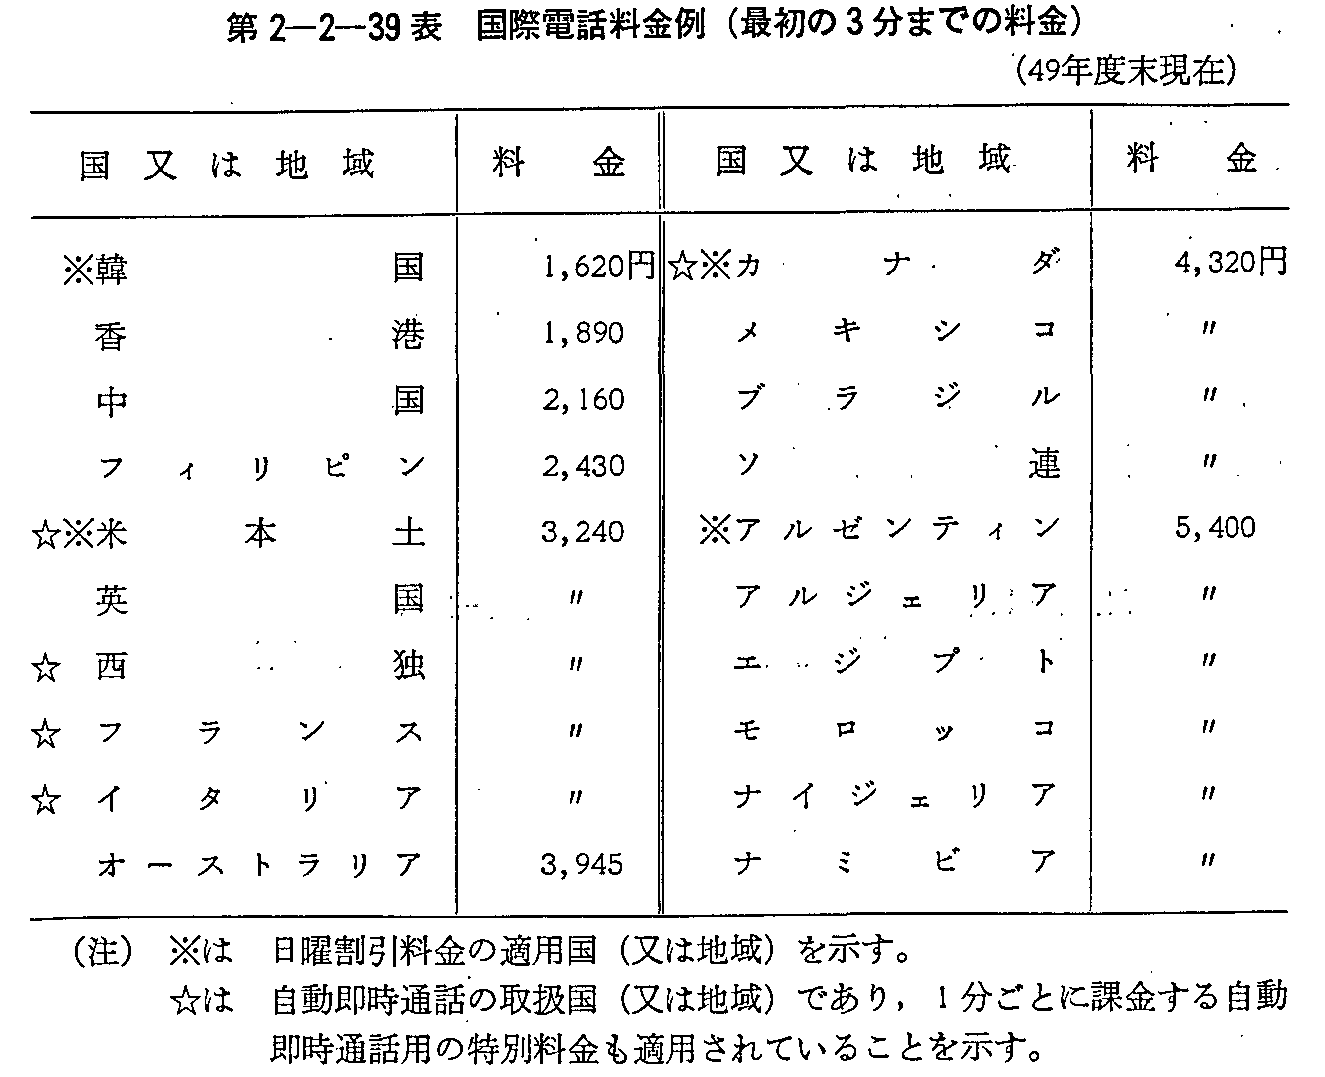 2-2-39\ ۓdb(ŏ3܂ł̗)(49Nx)